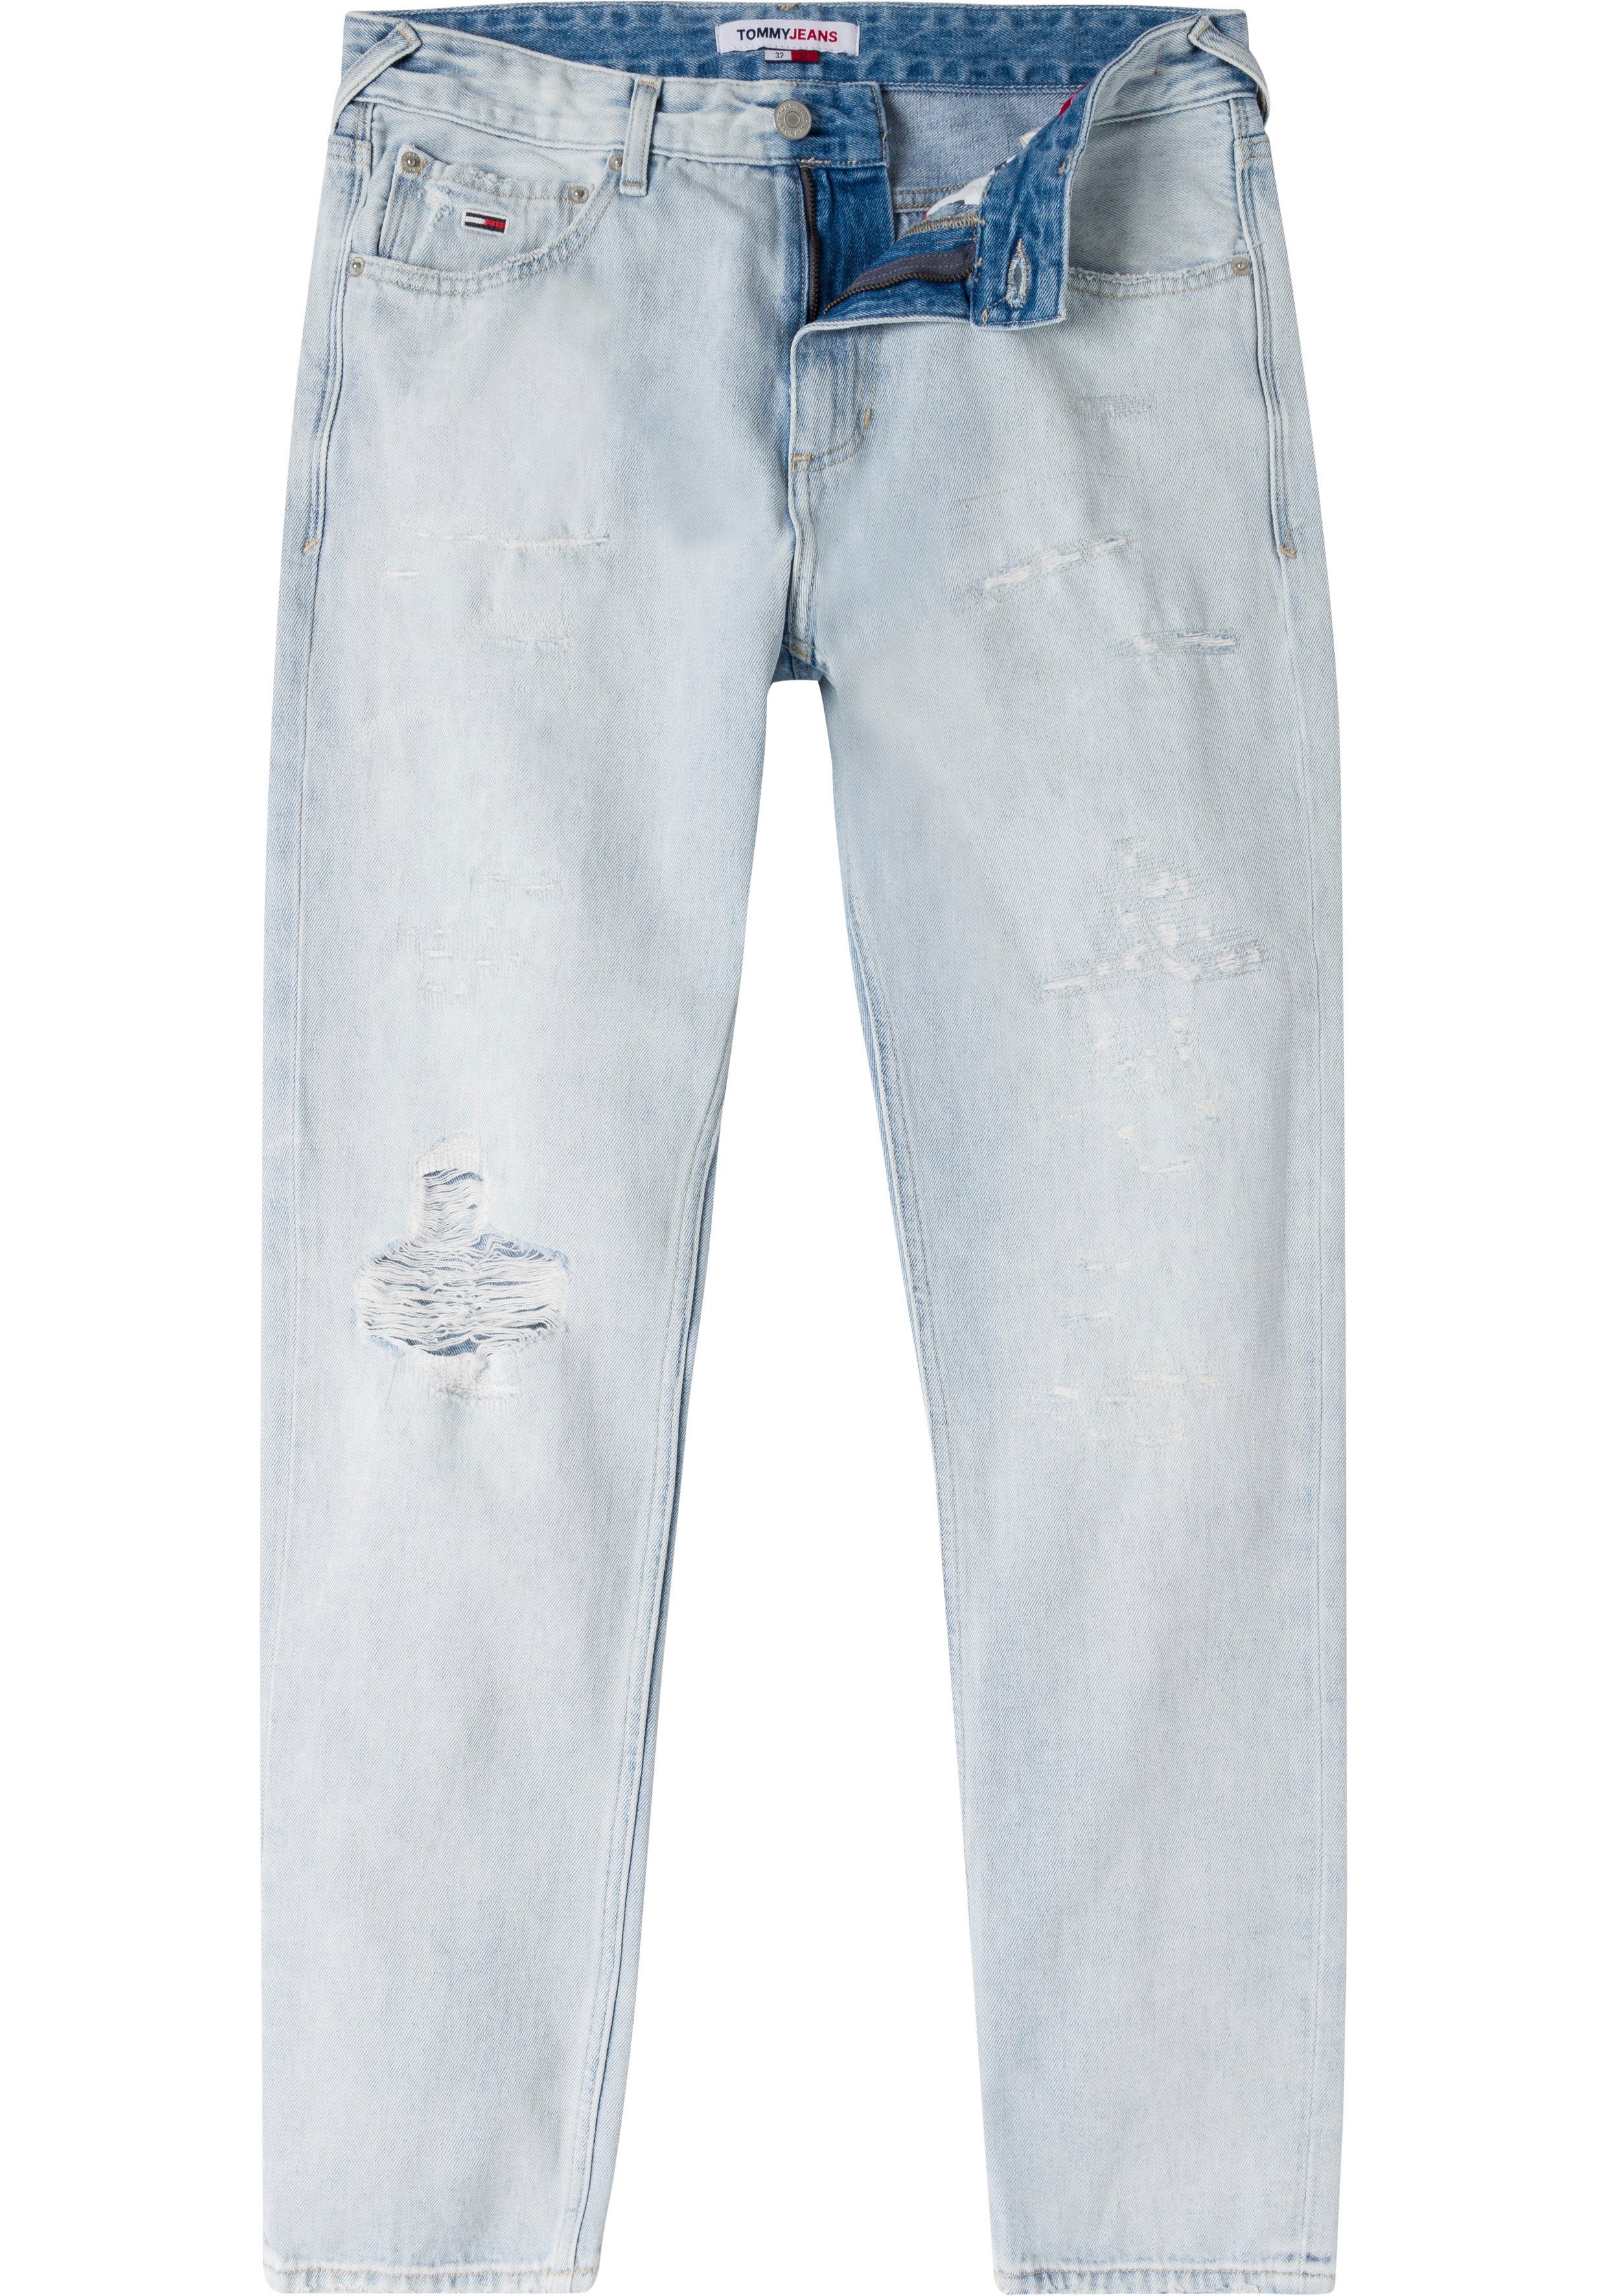 Y SCANTON mit Abrieb- Destroyed-Effekten und Tommy Straight-Jeans Jeans BG8015